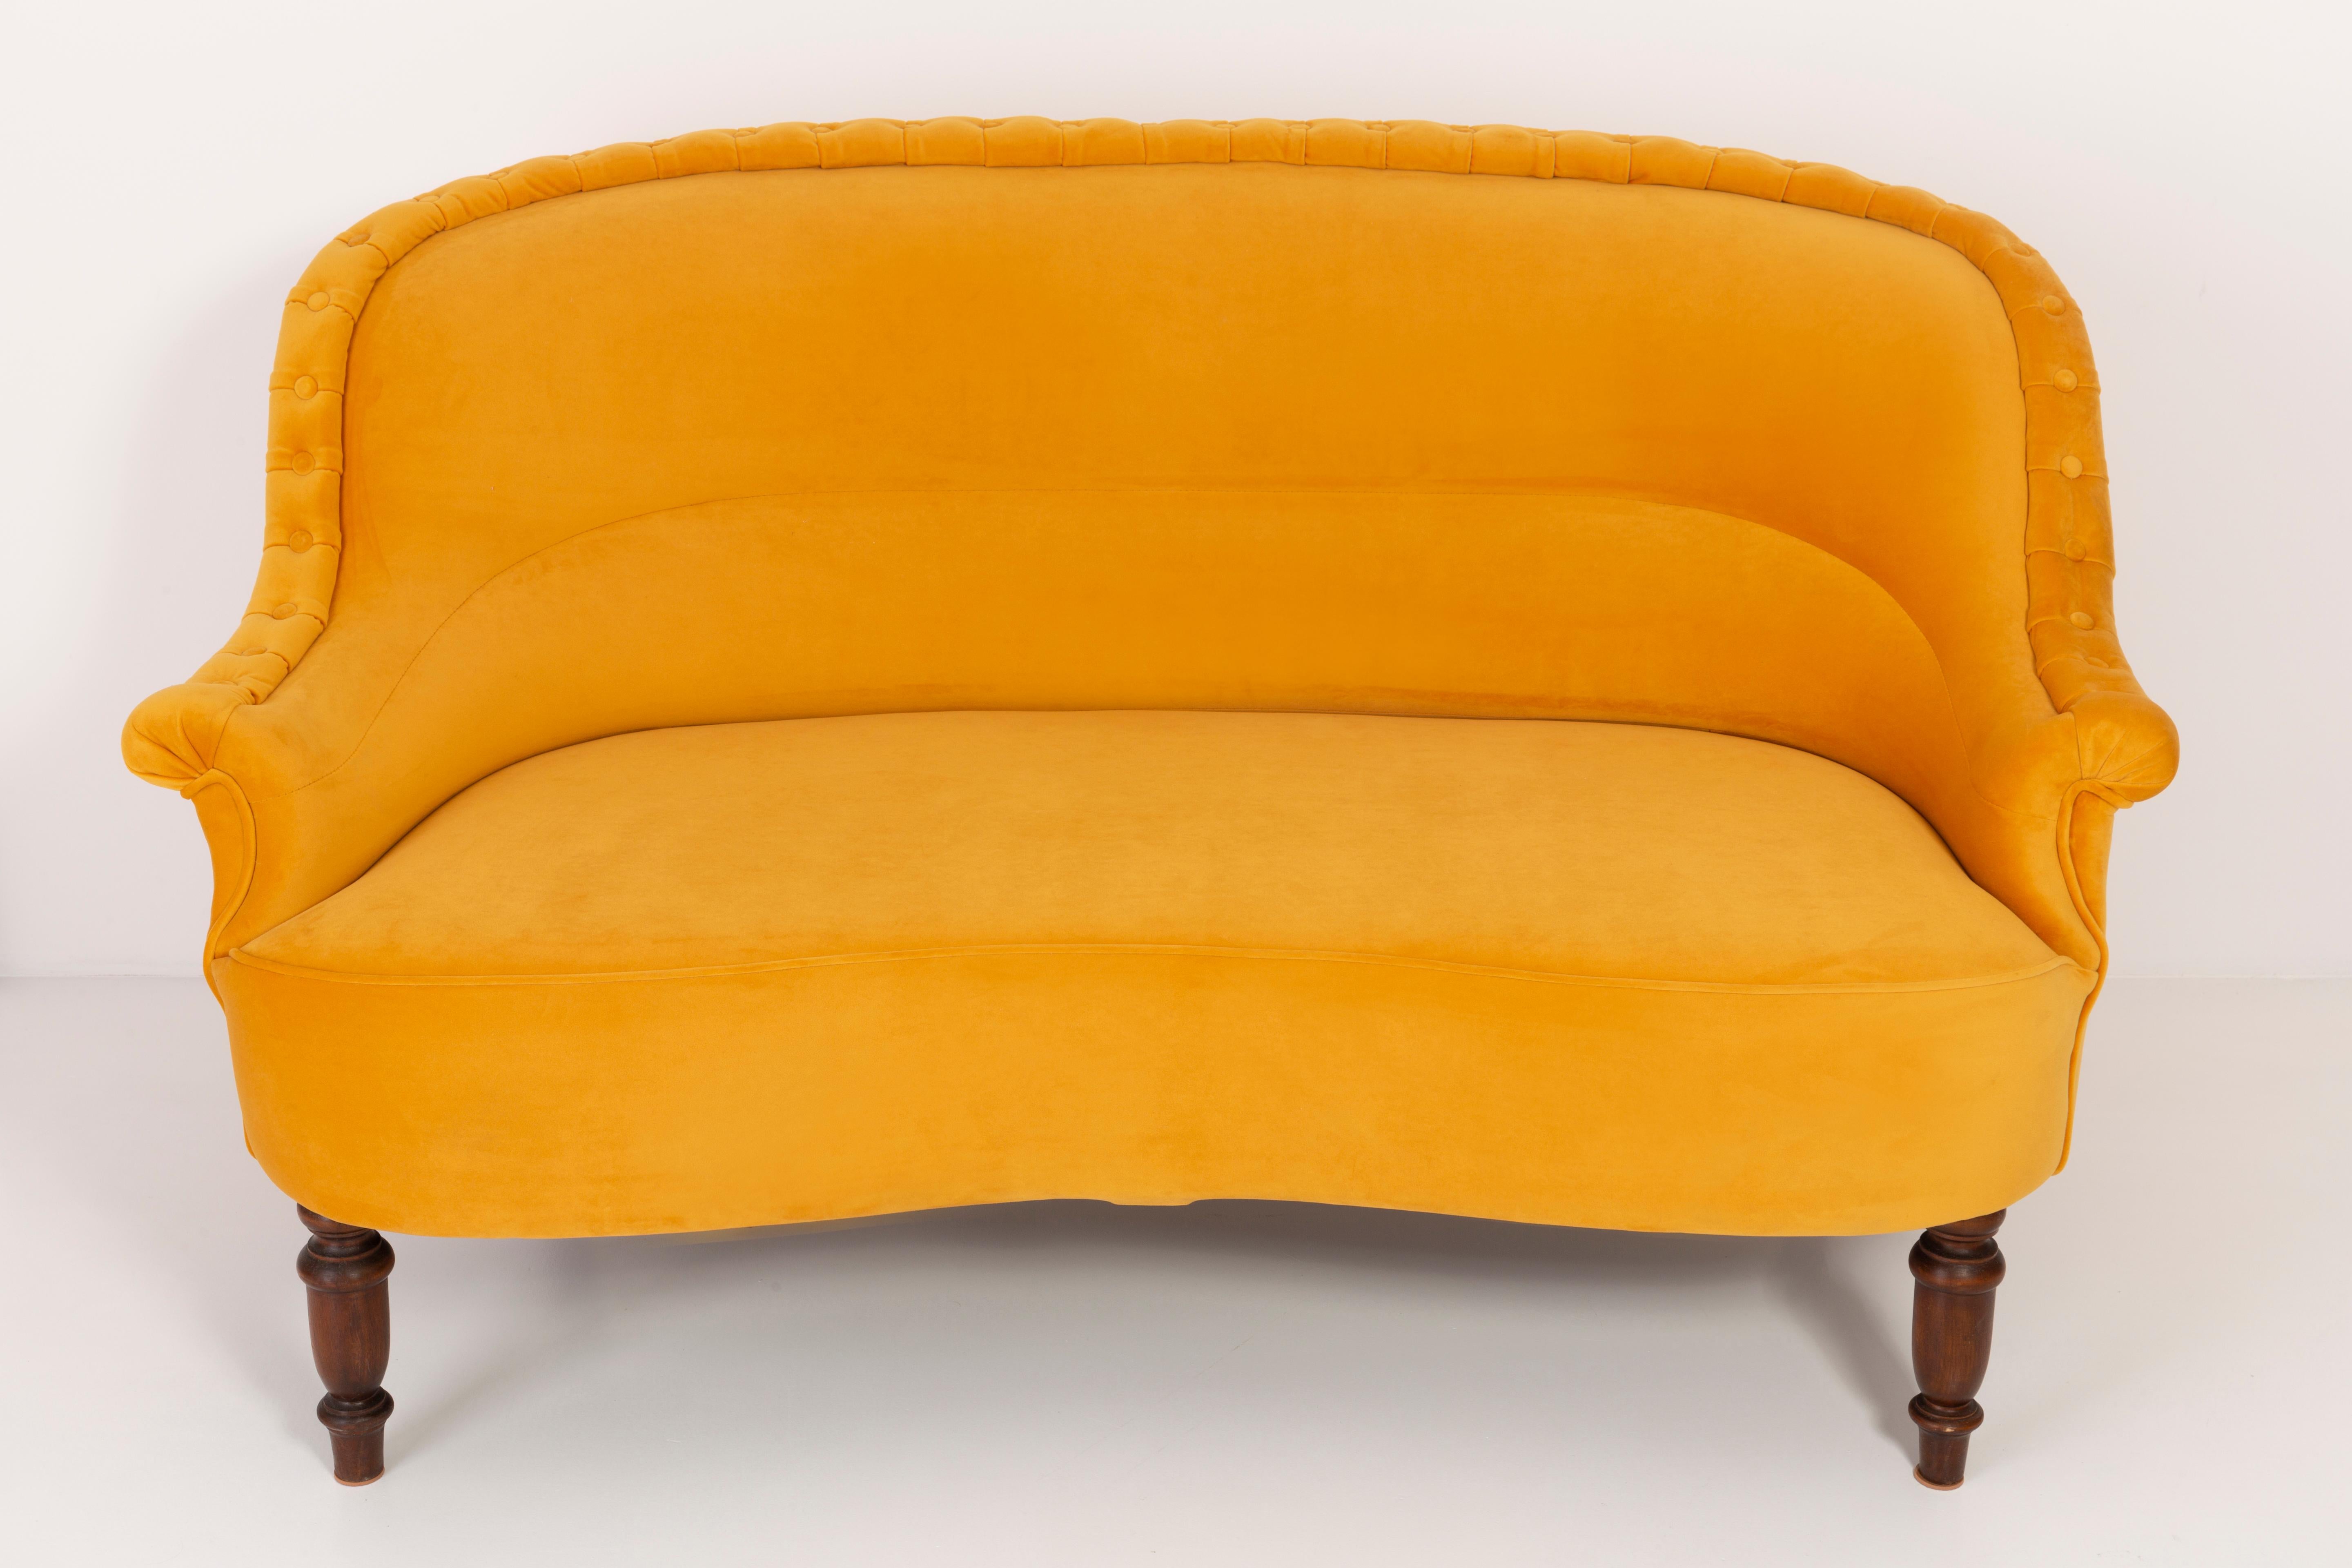 Canapé allemand produit dans les années 1930 à Berlin. Le canapé est après une rénovation complète de la tapisserie et de la menuiserie. Les pieds en bois sont soigneusement nettoyés et recouverts d'un vernis semi-mat de la couleur d'une noix. La